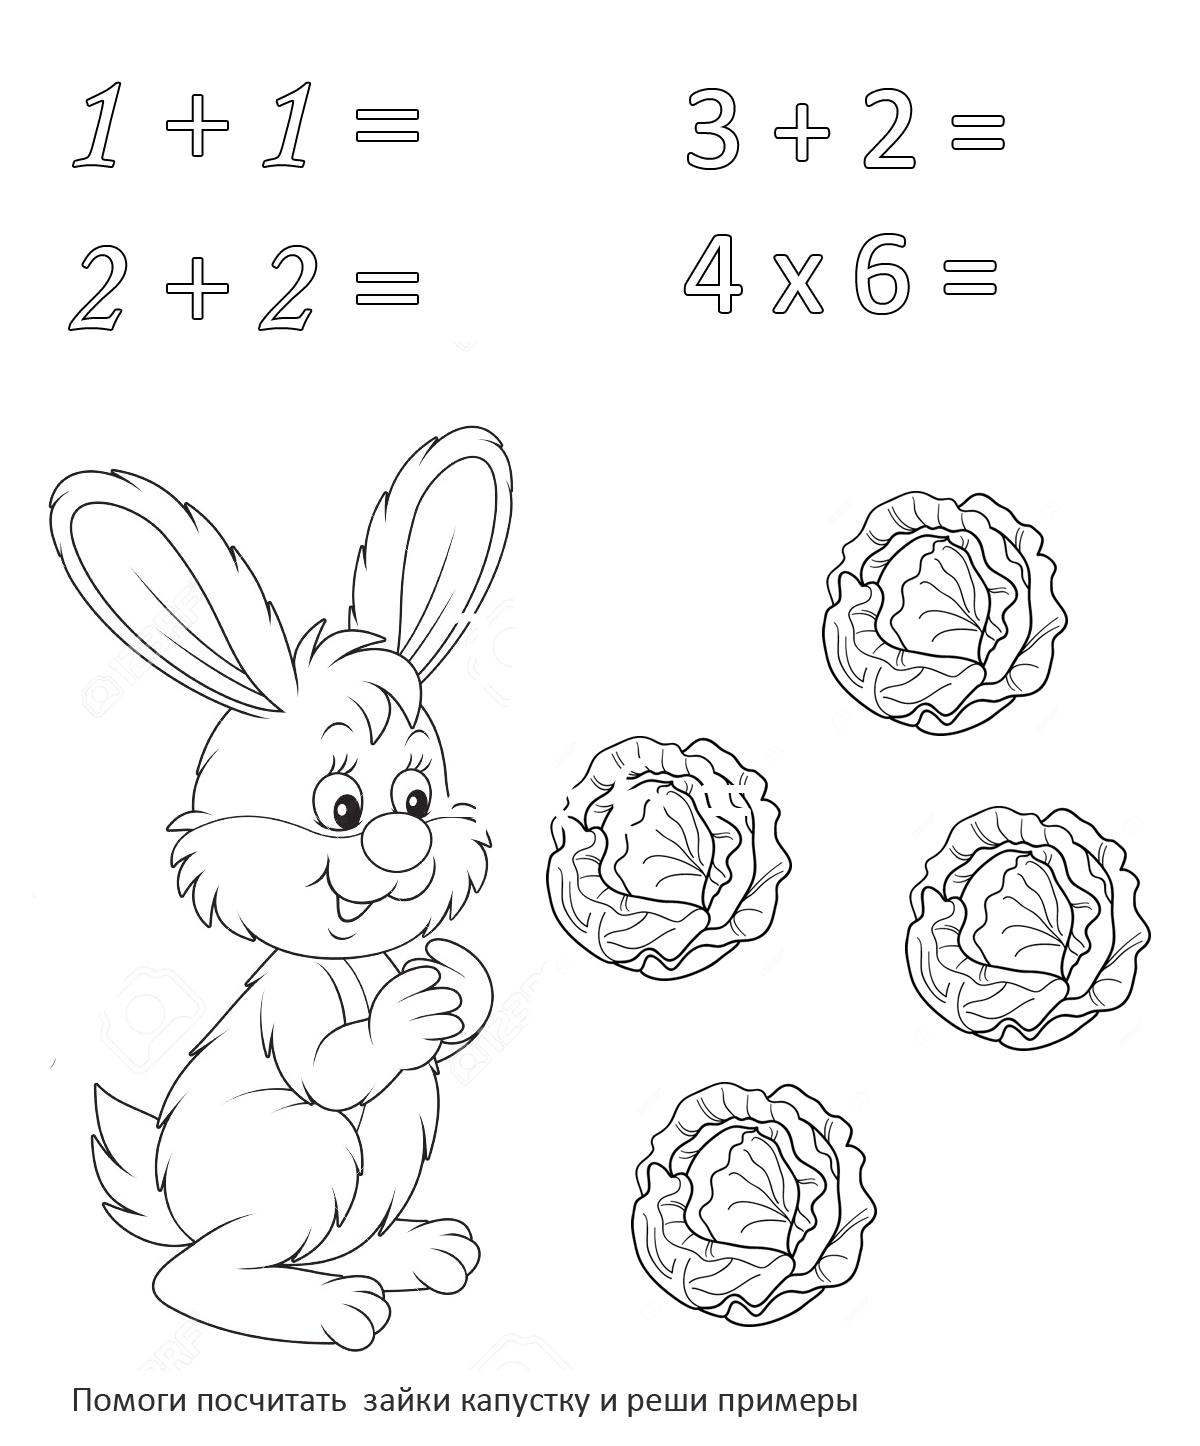 Решение примеров раскраска. Раскраска с примерами для дошкольников. Раскраска зайчик. Математические раскраски для дошкольников. Раскраска по математике для дошкольников.